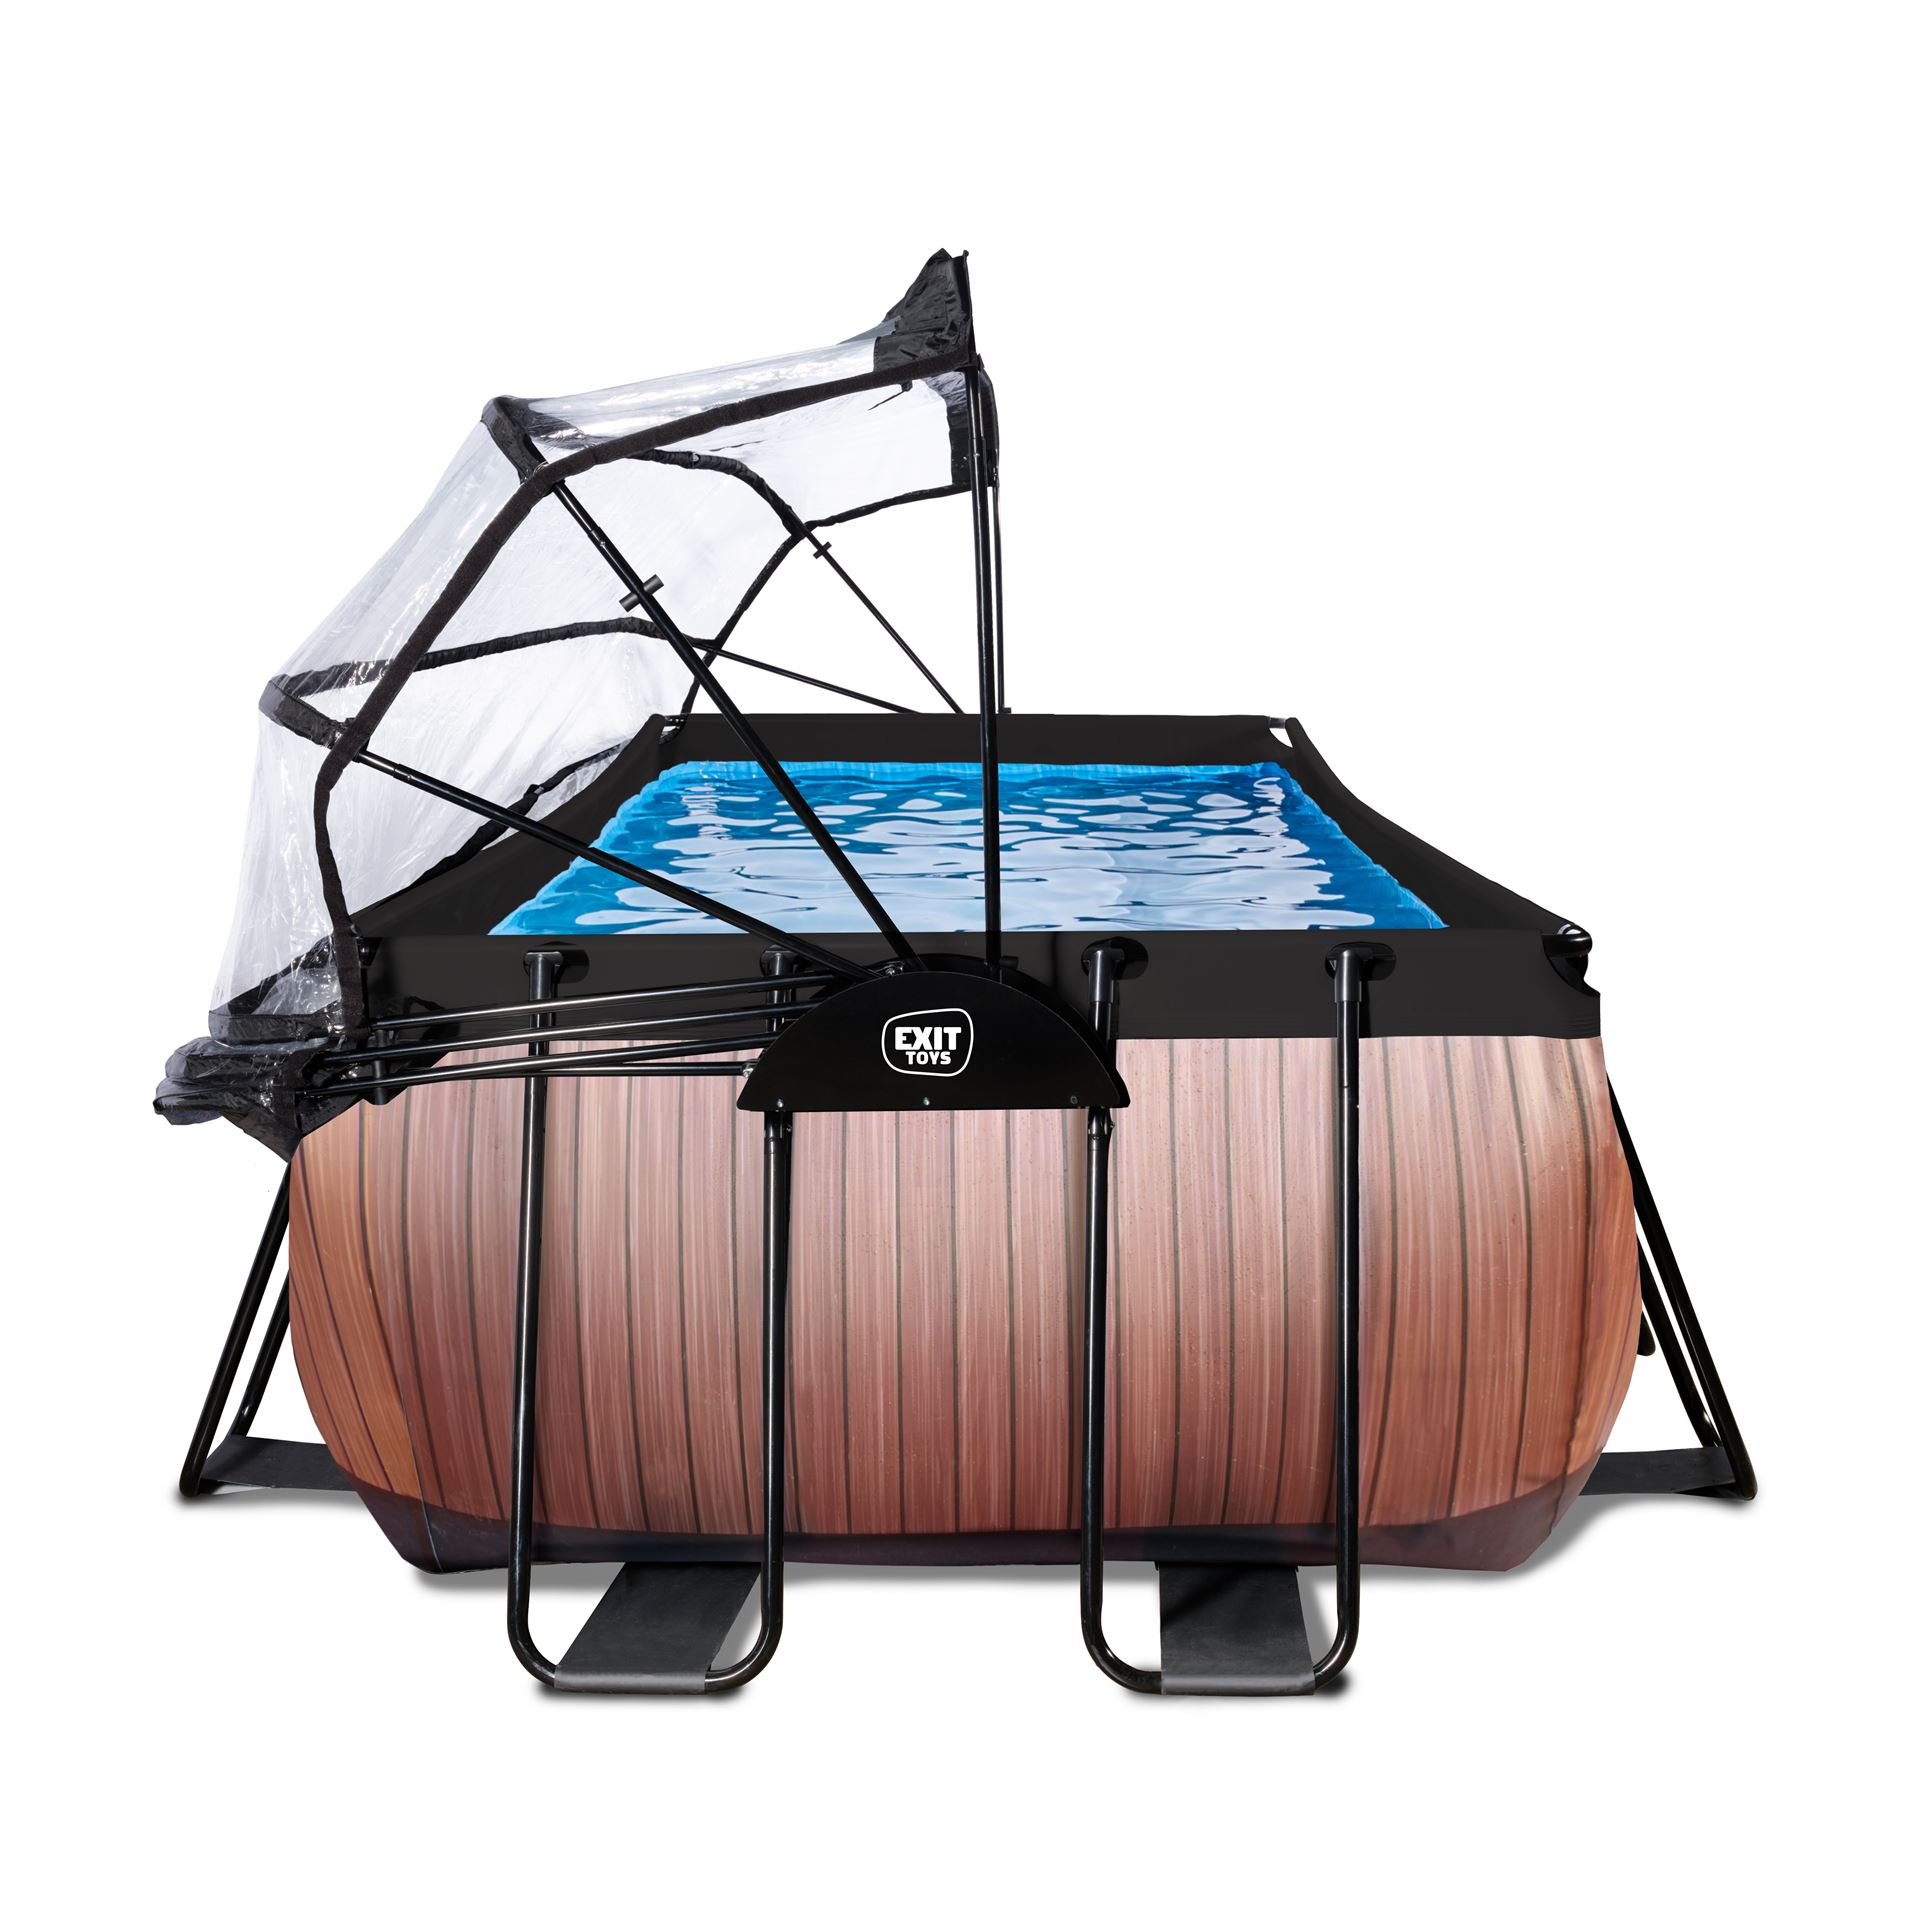 EXIT-Wood-zwembad-540x250x100cm-met-zandfilterpomp-en-overkapping-en-warmtepomp-bruin